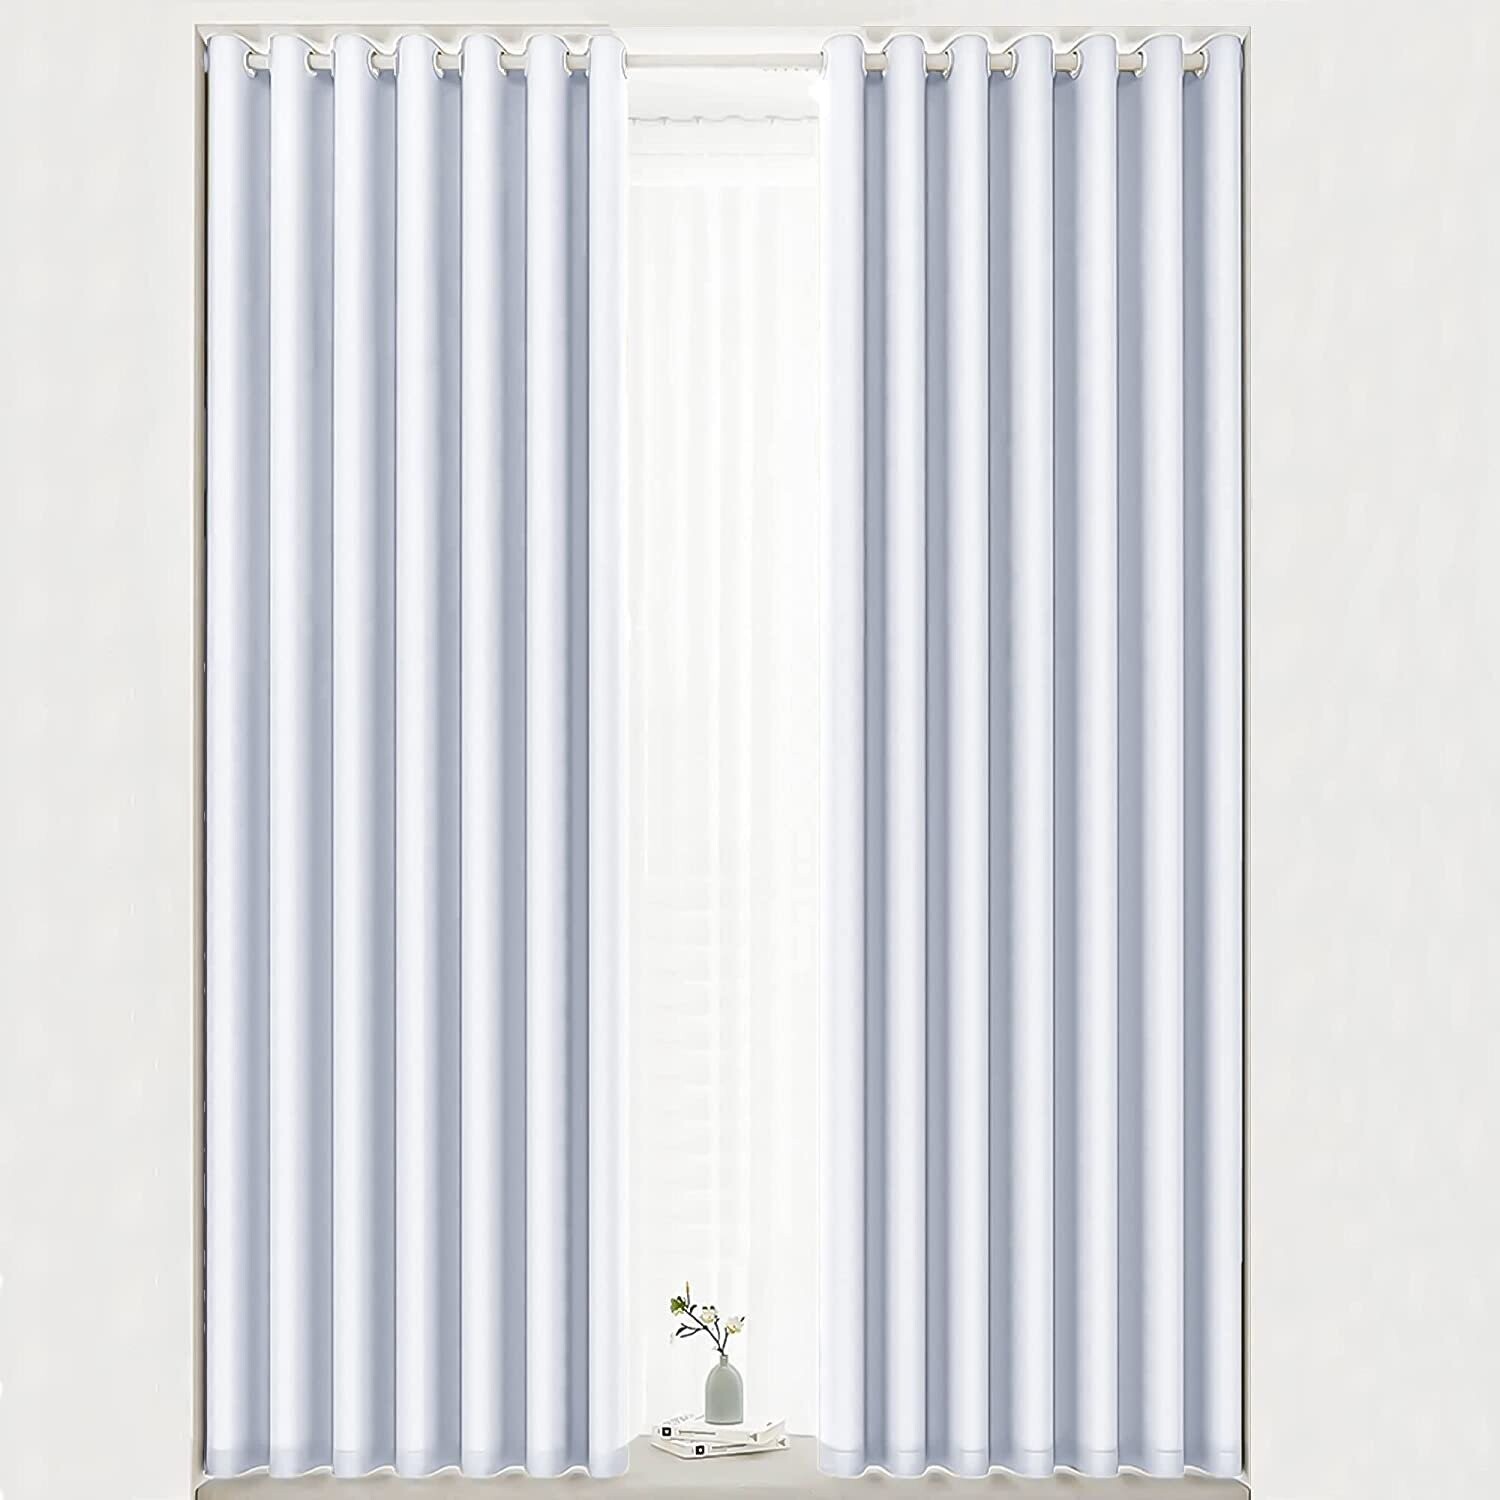 Cortina Opaca Lisa Suave, ventanas, Sala, Salón ,Dormitorio en Gris perla con 8 Ojales de Acero Paquete 1 Piezas de 140x260cm.